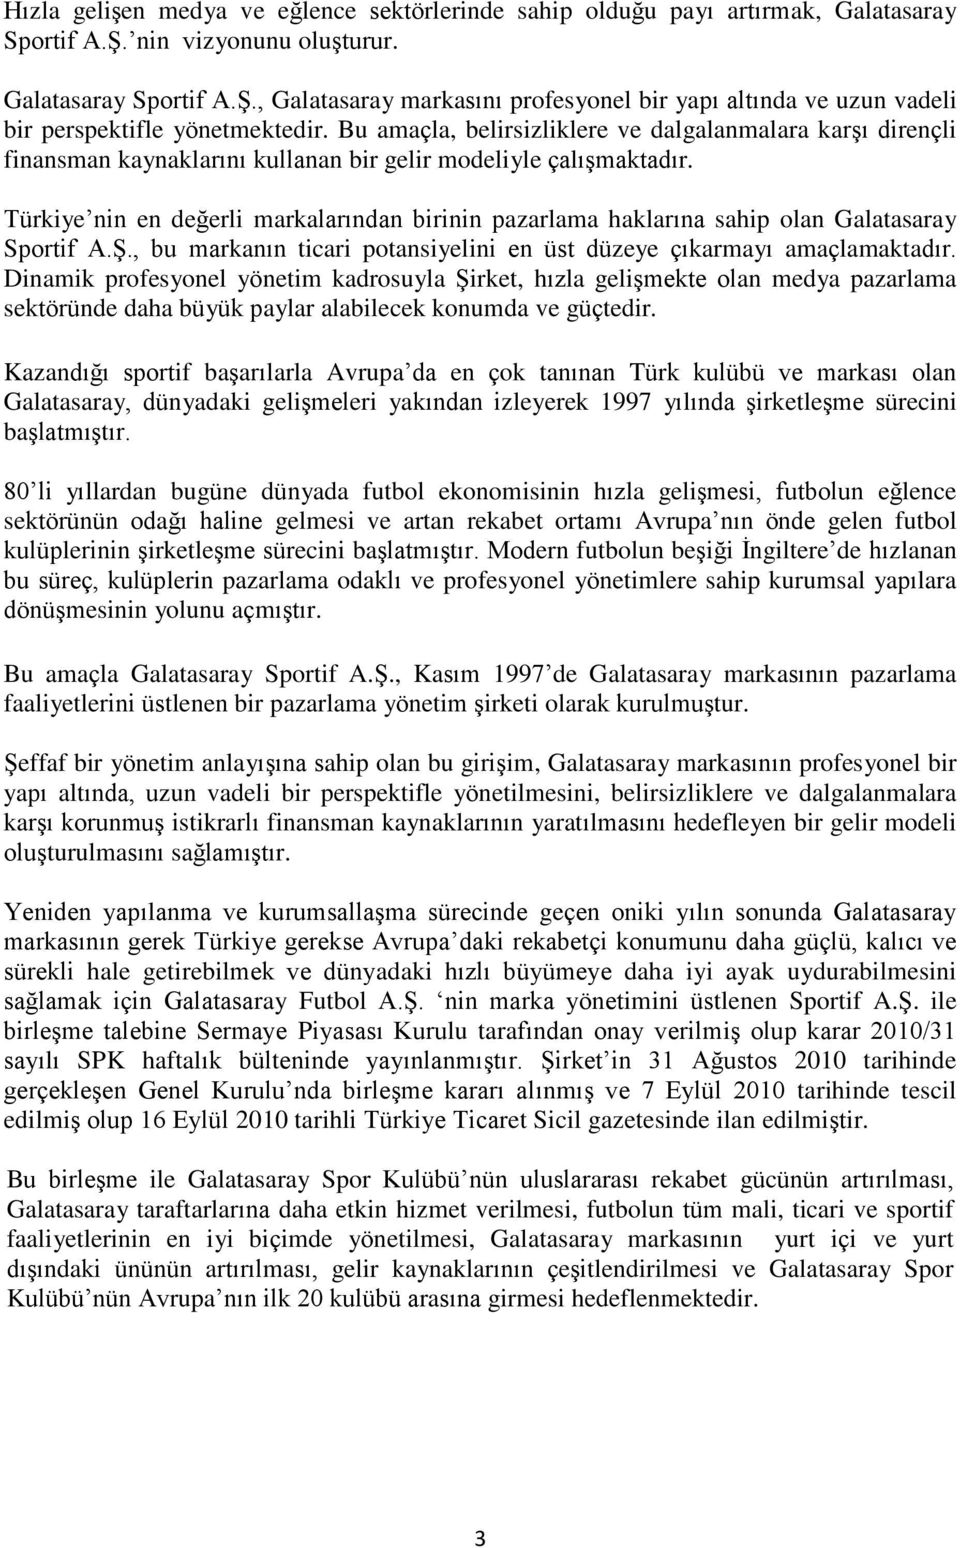 Türkiye nin en değerli markalarından birinin pazarlama haklarına sahip olan Galatasaray Sportif A.Ş., bu markanın ticari potansiyelini en üst düzeye çıkarmayı amaçlamaktadır.